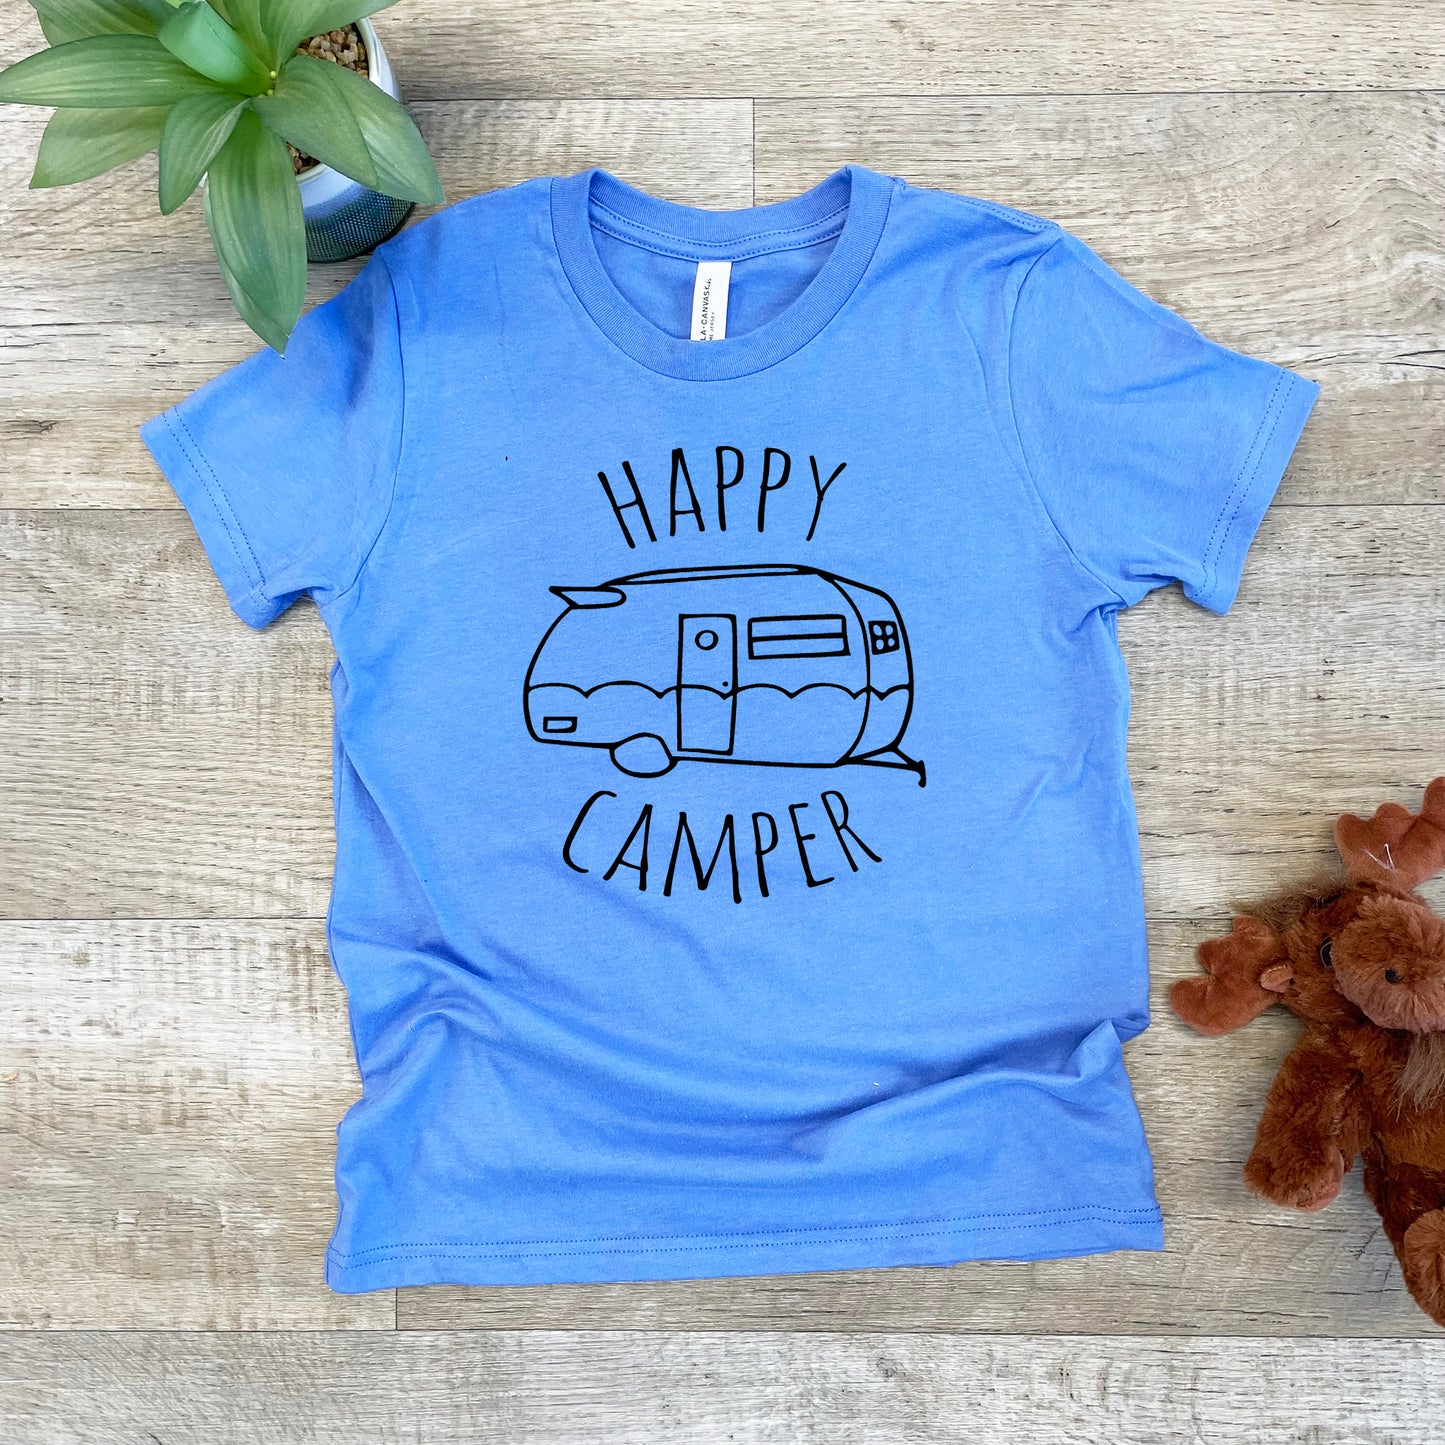 Happy Camper - Kid's Tee - Columbia Blue or Lavender